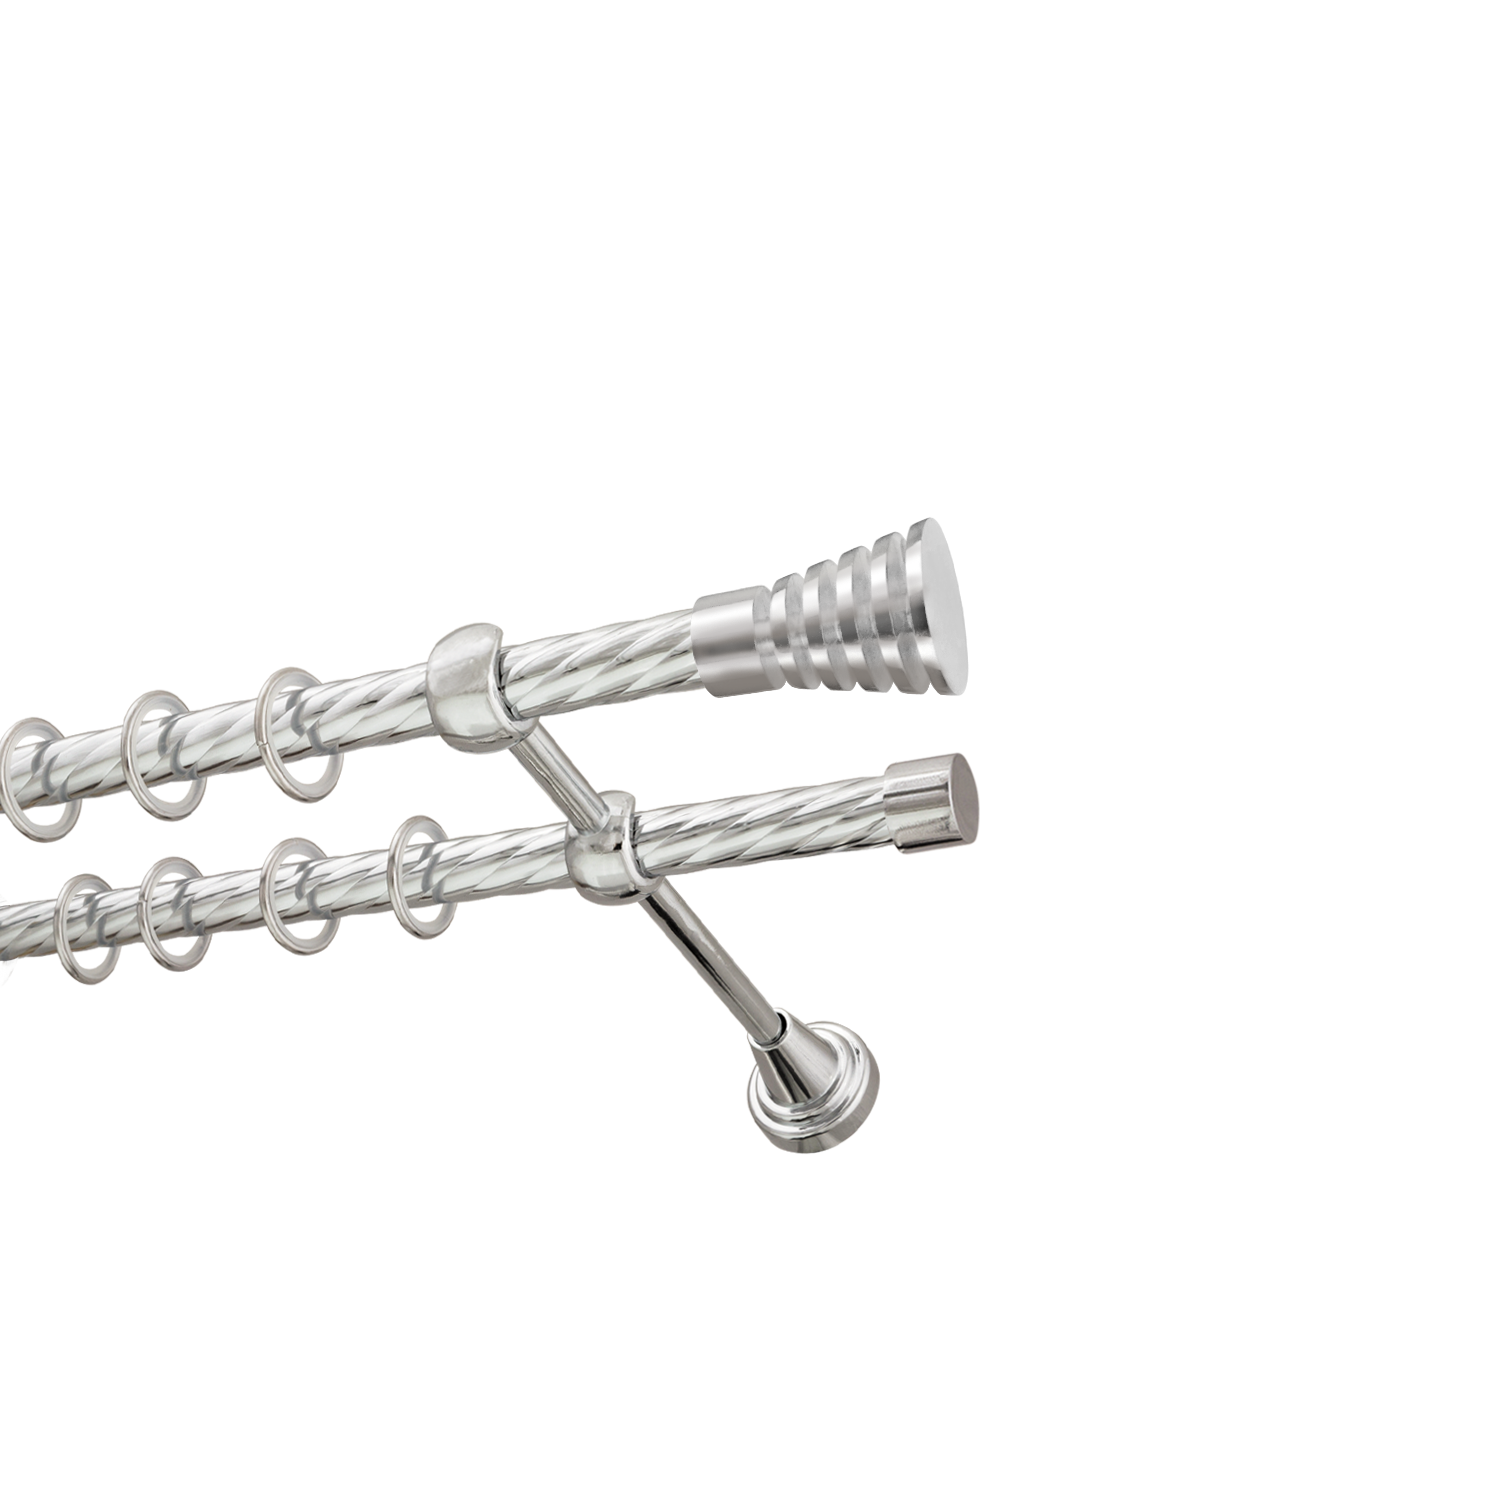 Металлический карниз для штор Верона, двухрядный 16/16 мм, серебро, витая штанга, длина 180 см